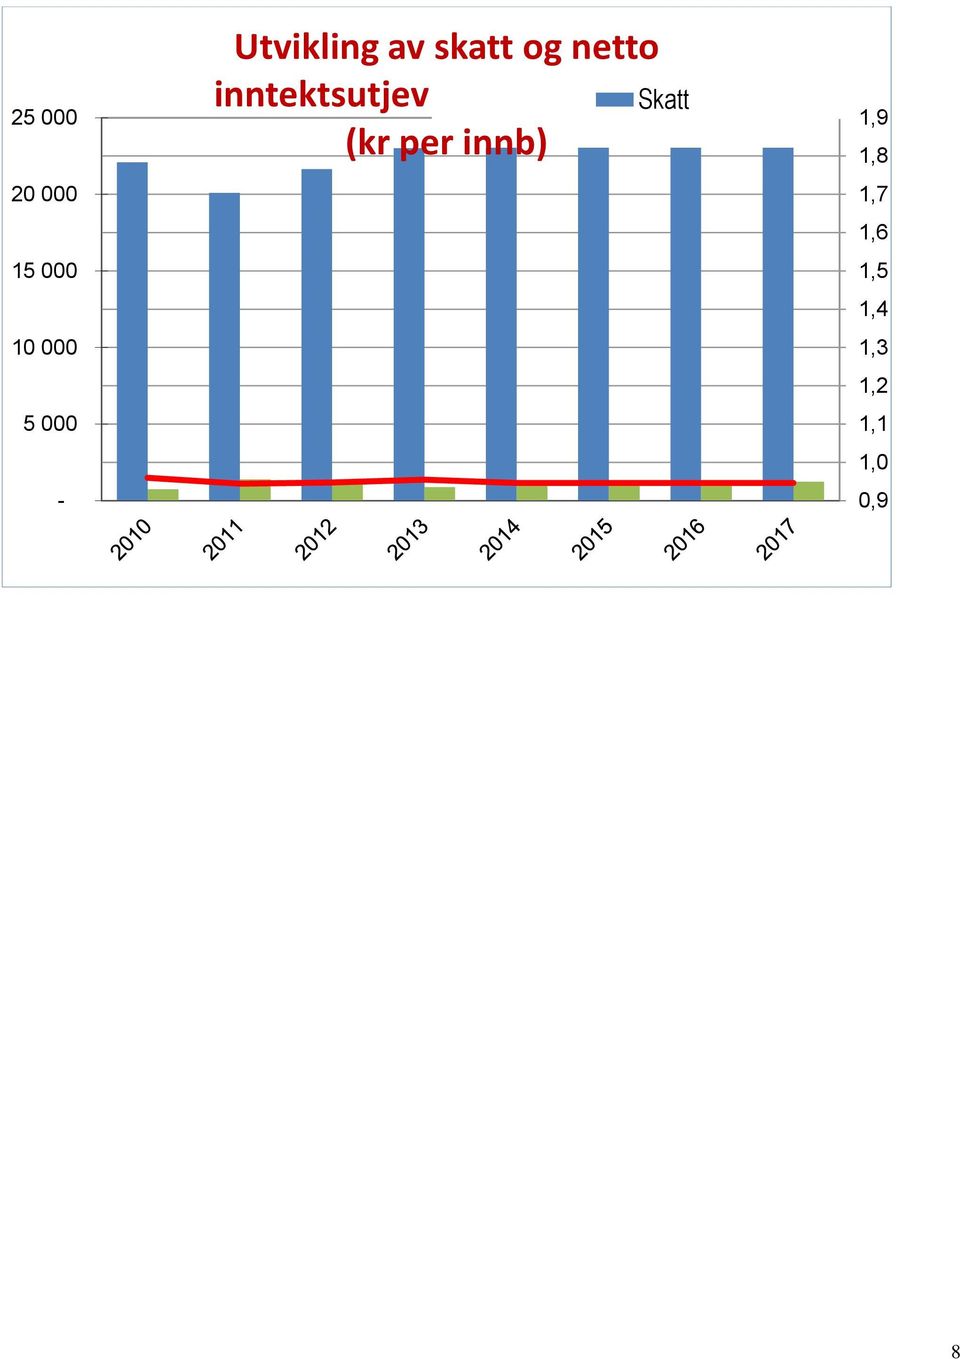 inntektsutjevning 2010-2016 Skatt (kr